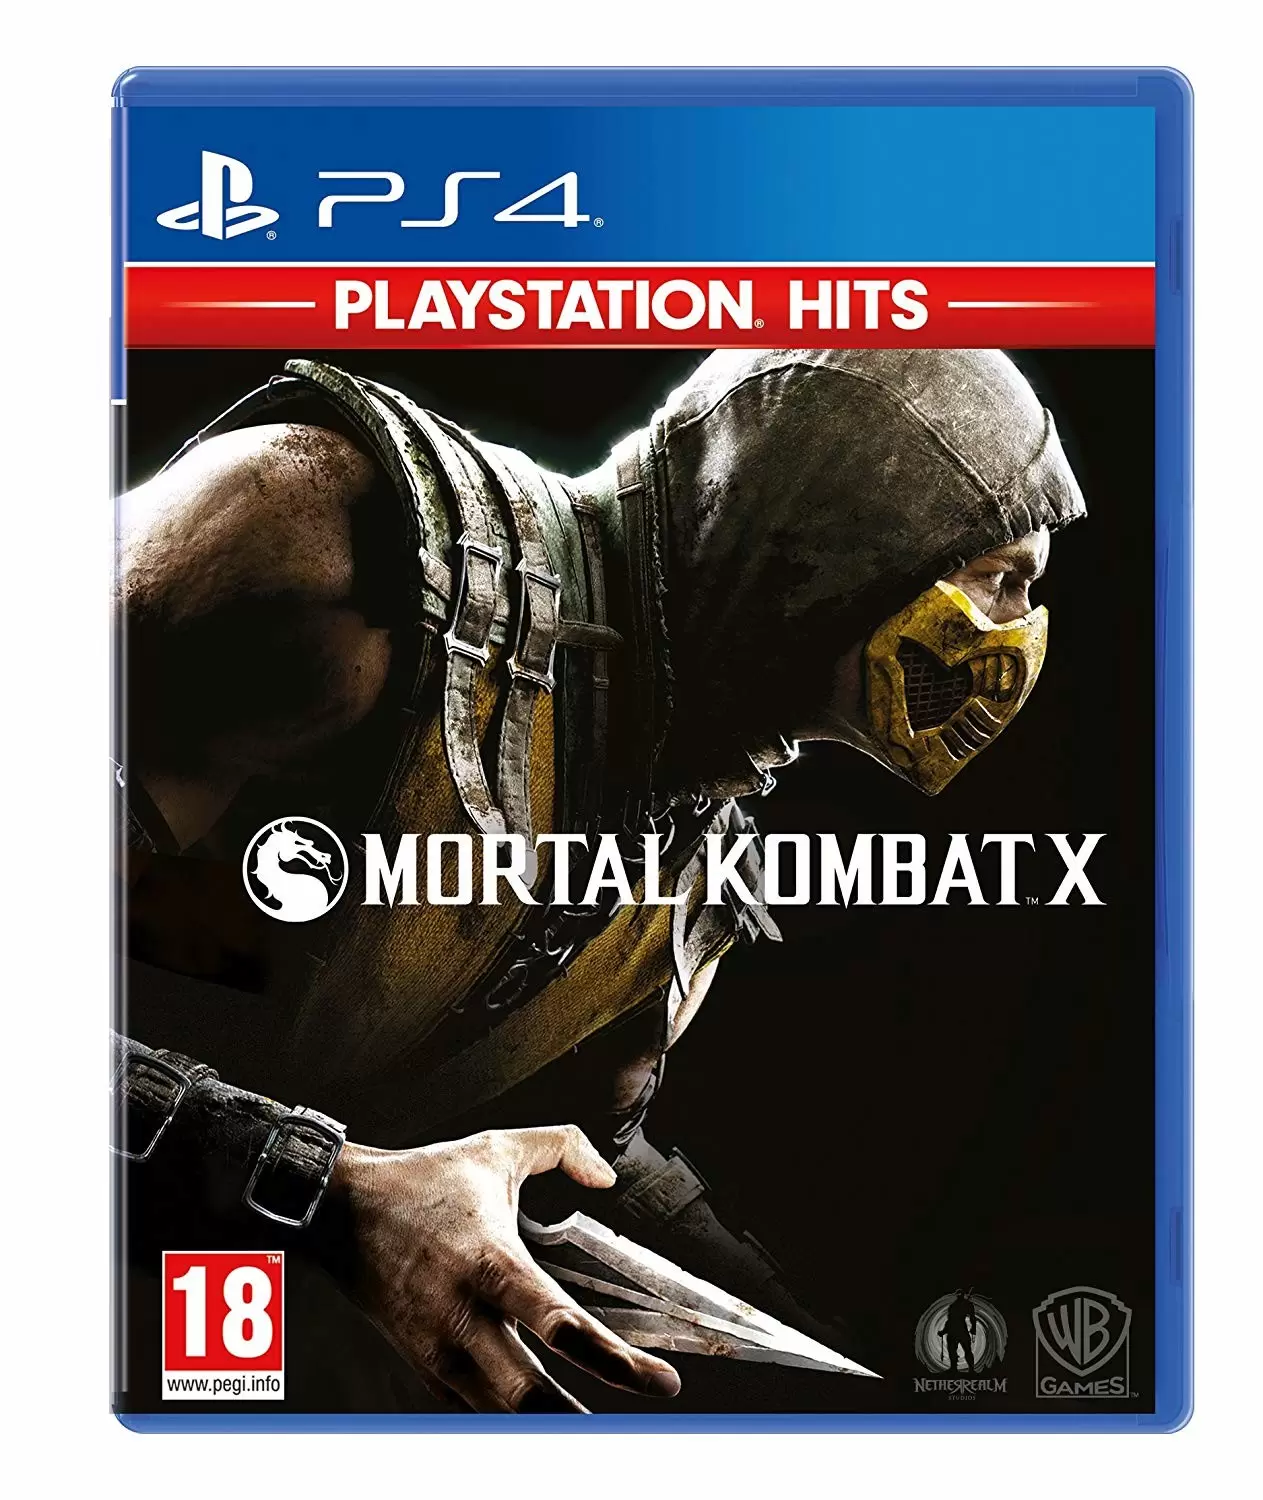 PS4 Games - Mortal Kombat X (Playstation Hits)